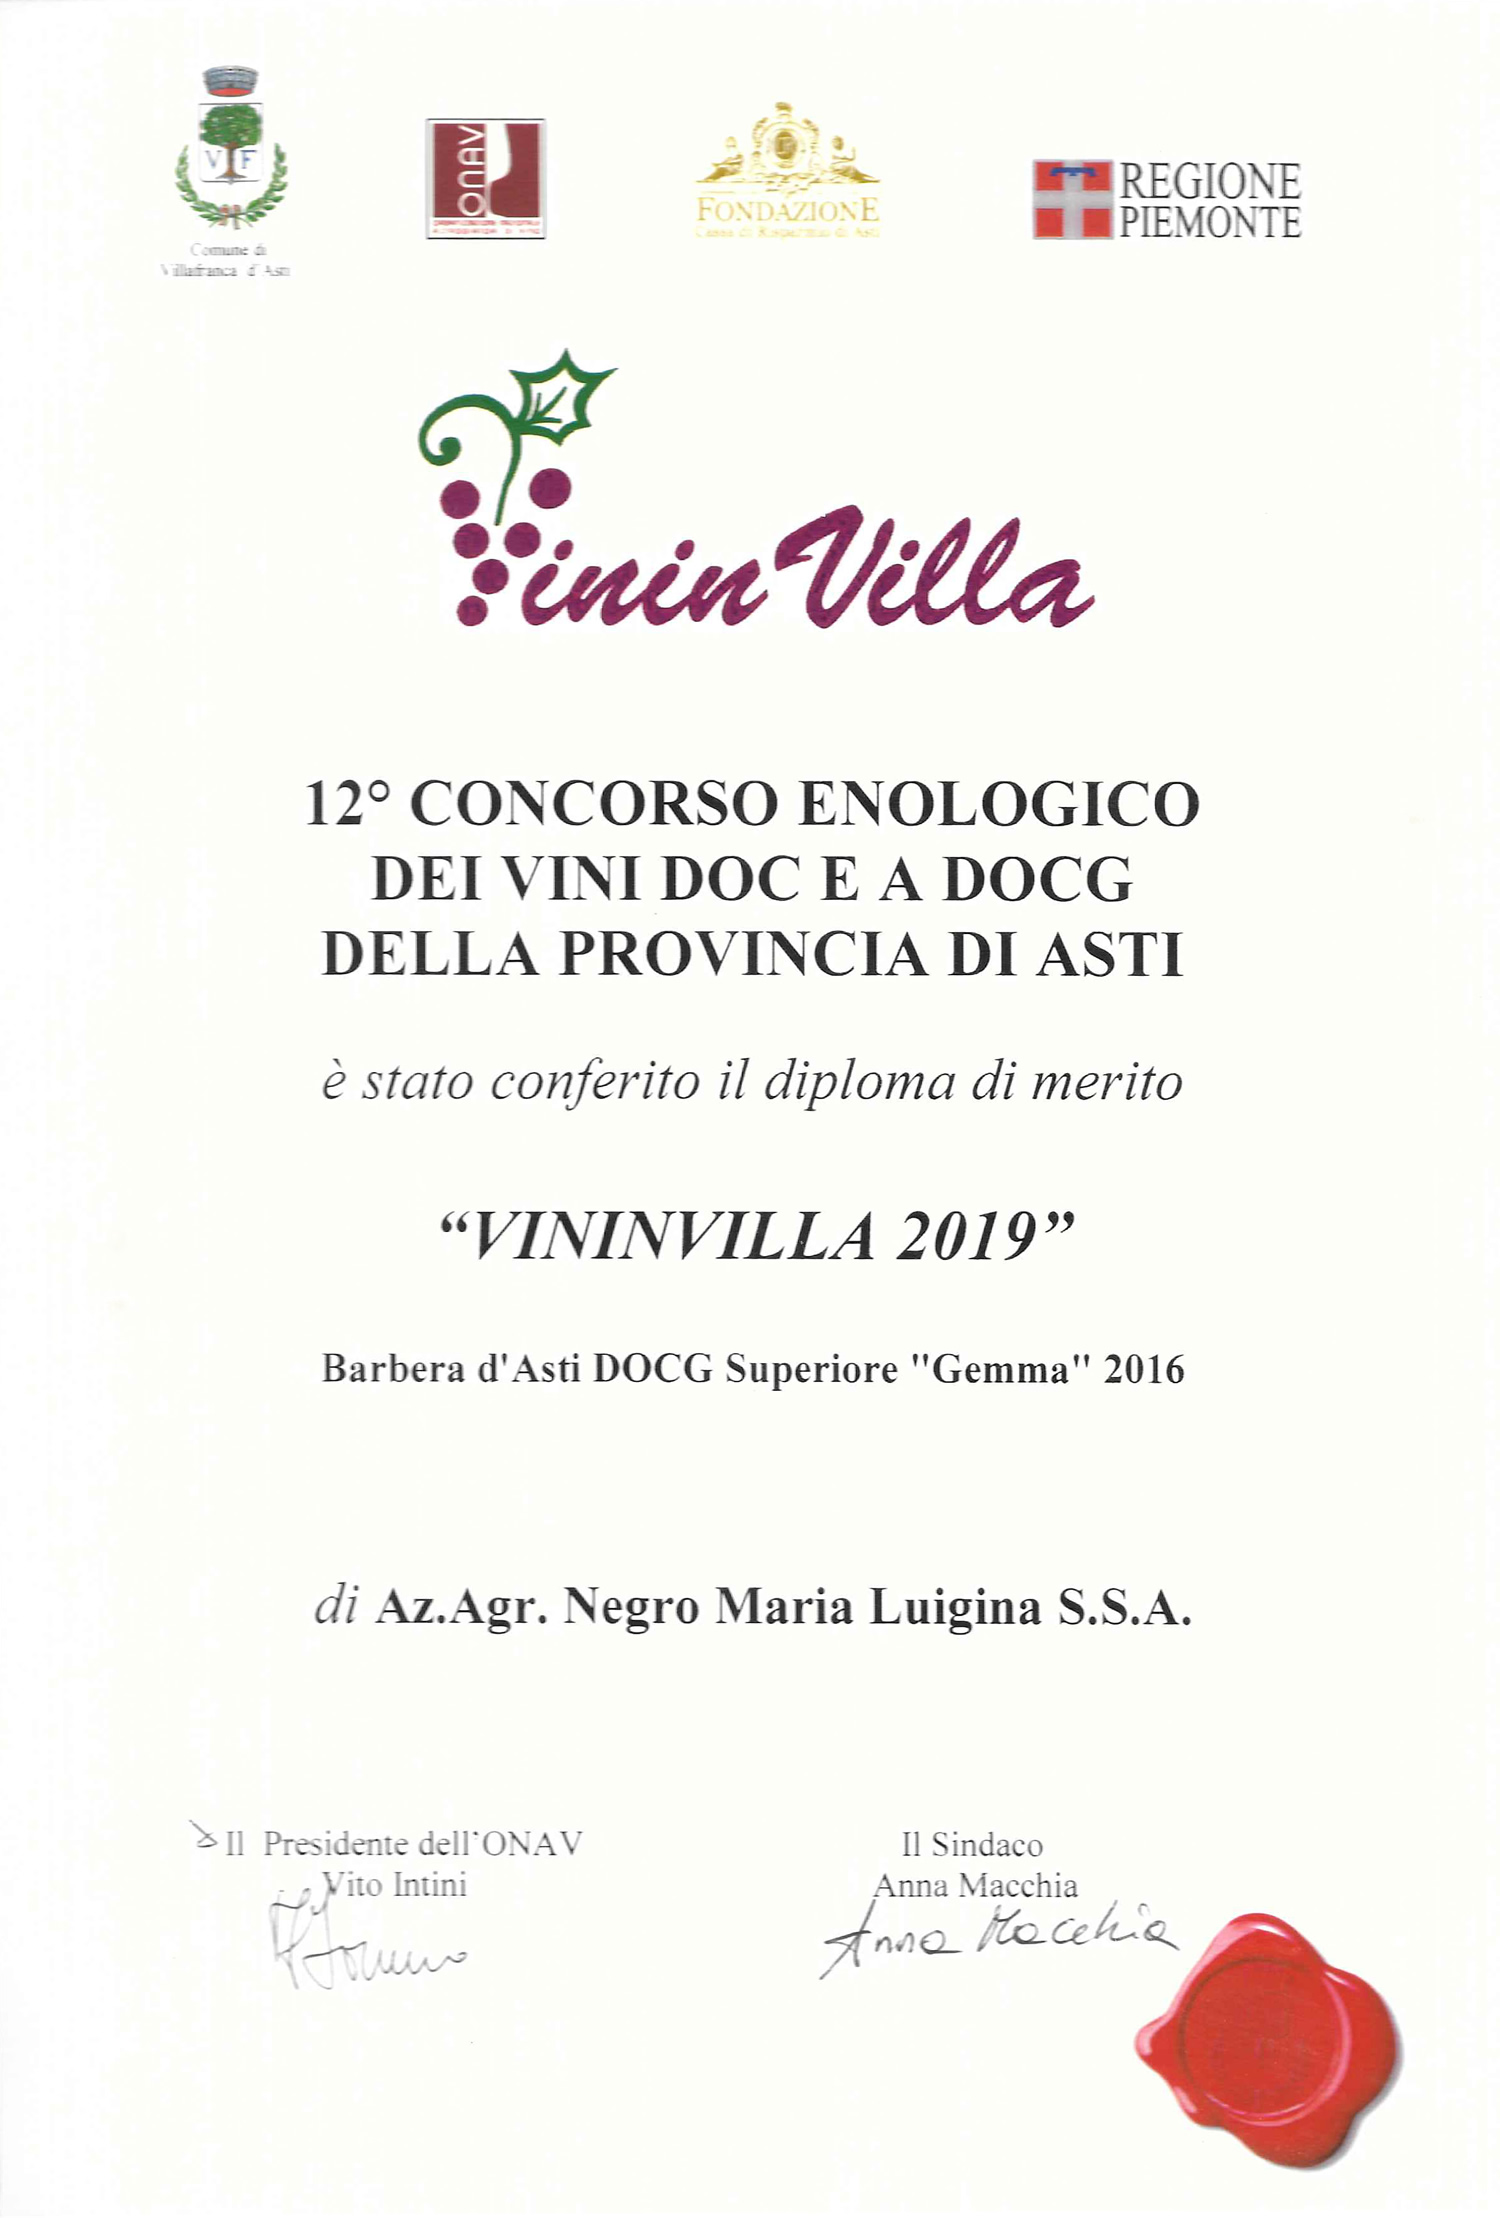 Vininvilla 2019 - Barbera d'Asti D.O.C.G Superiore "Gemma" 2016.